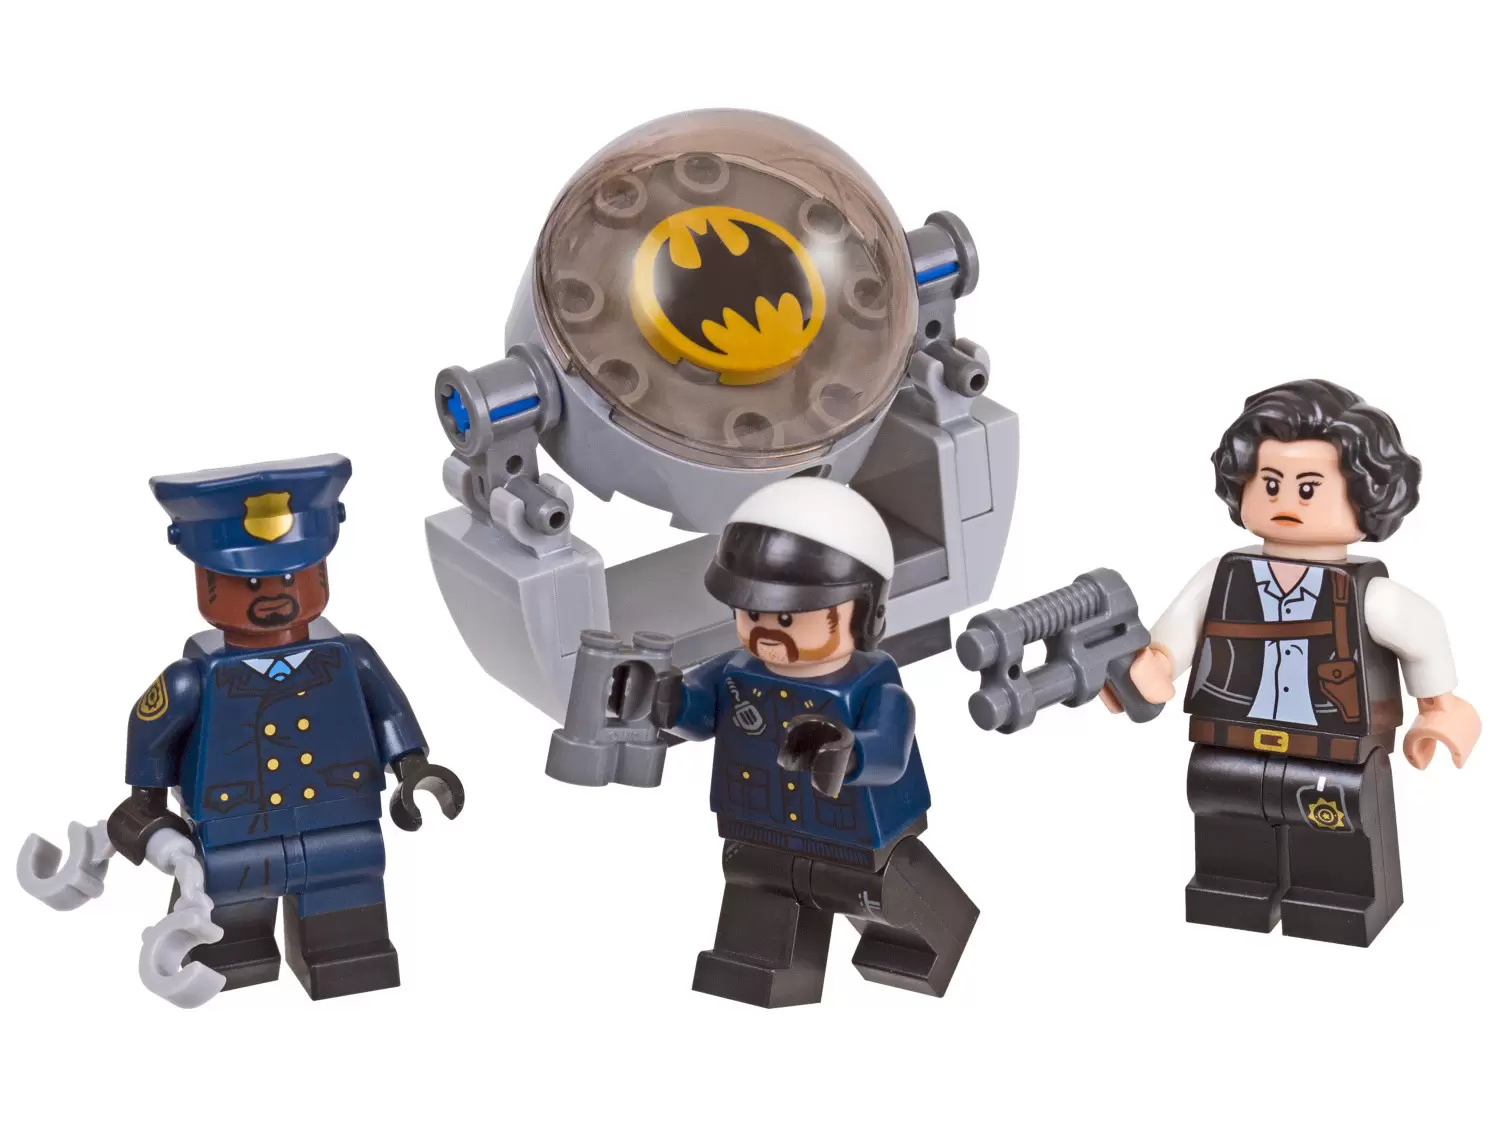 The LEGO Batman Movie - The LEGO Batman Movie Accessory Set